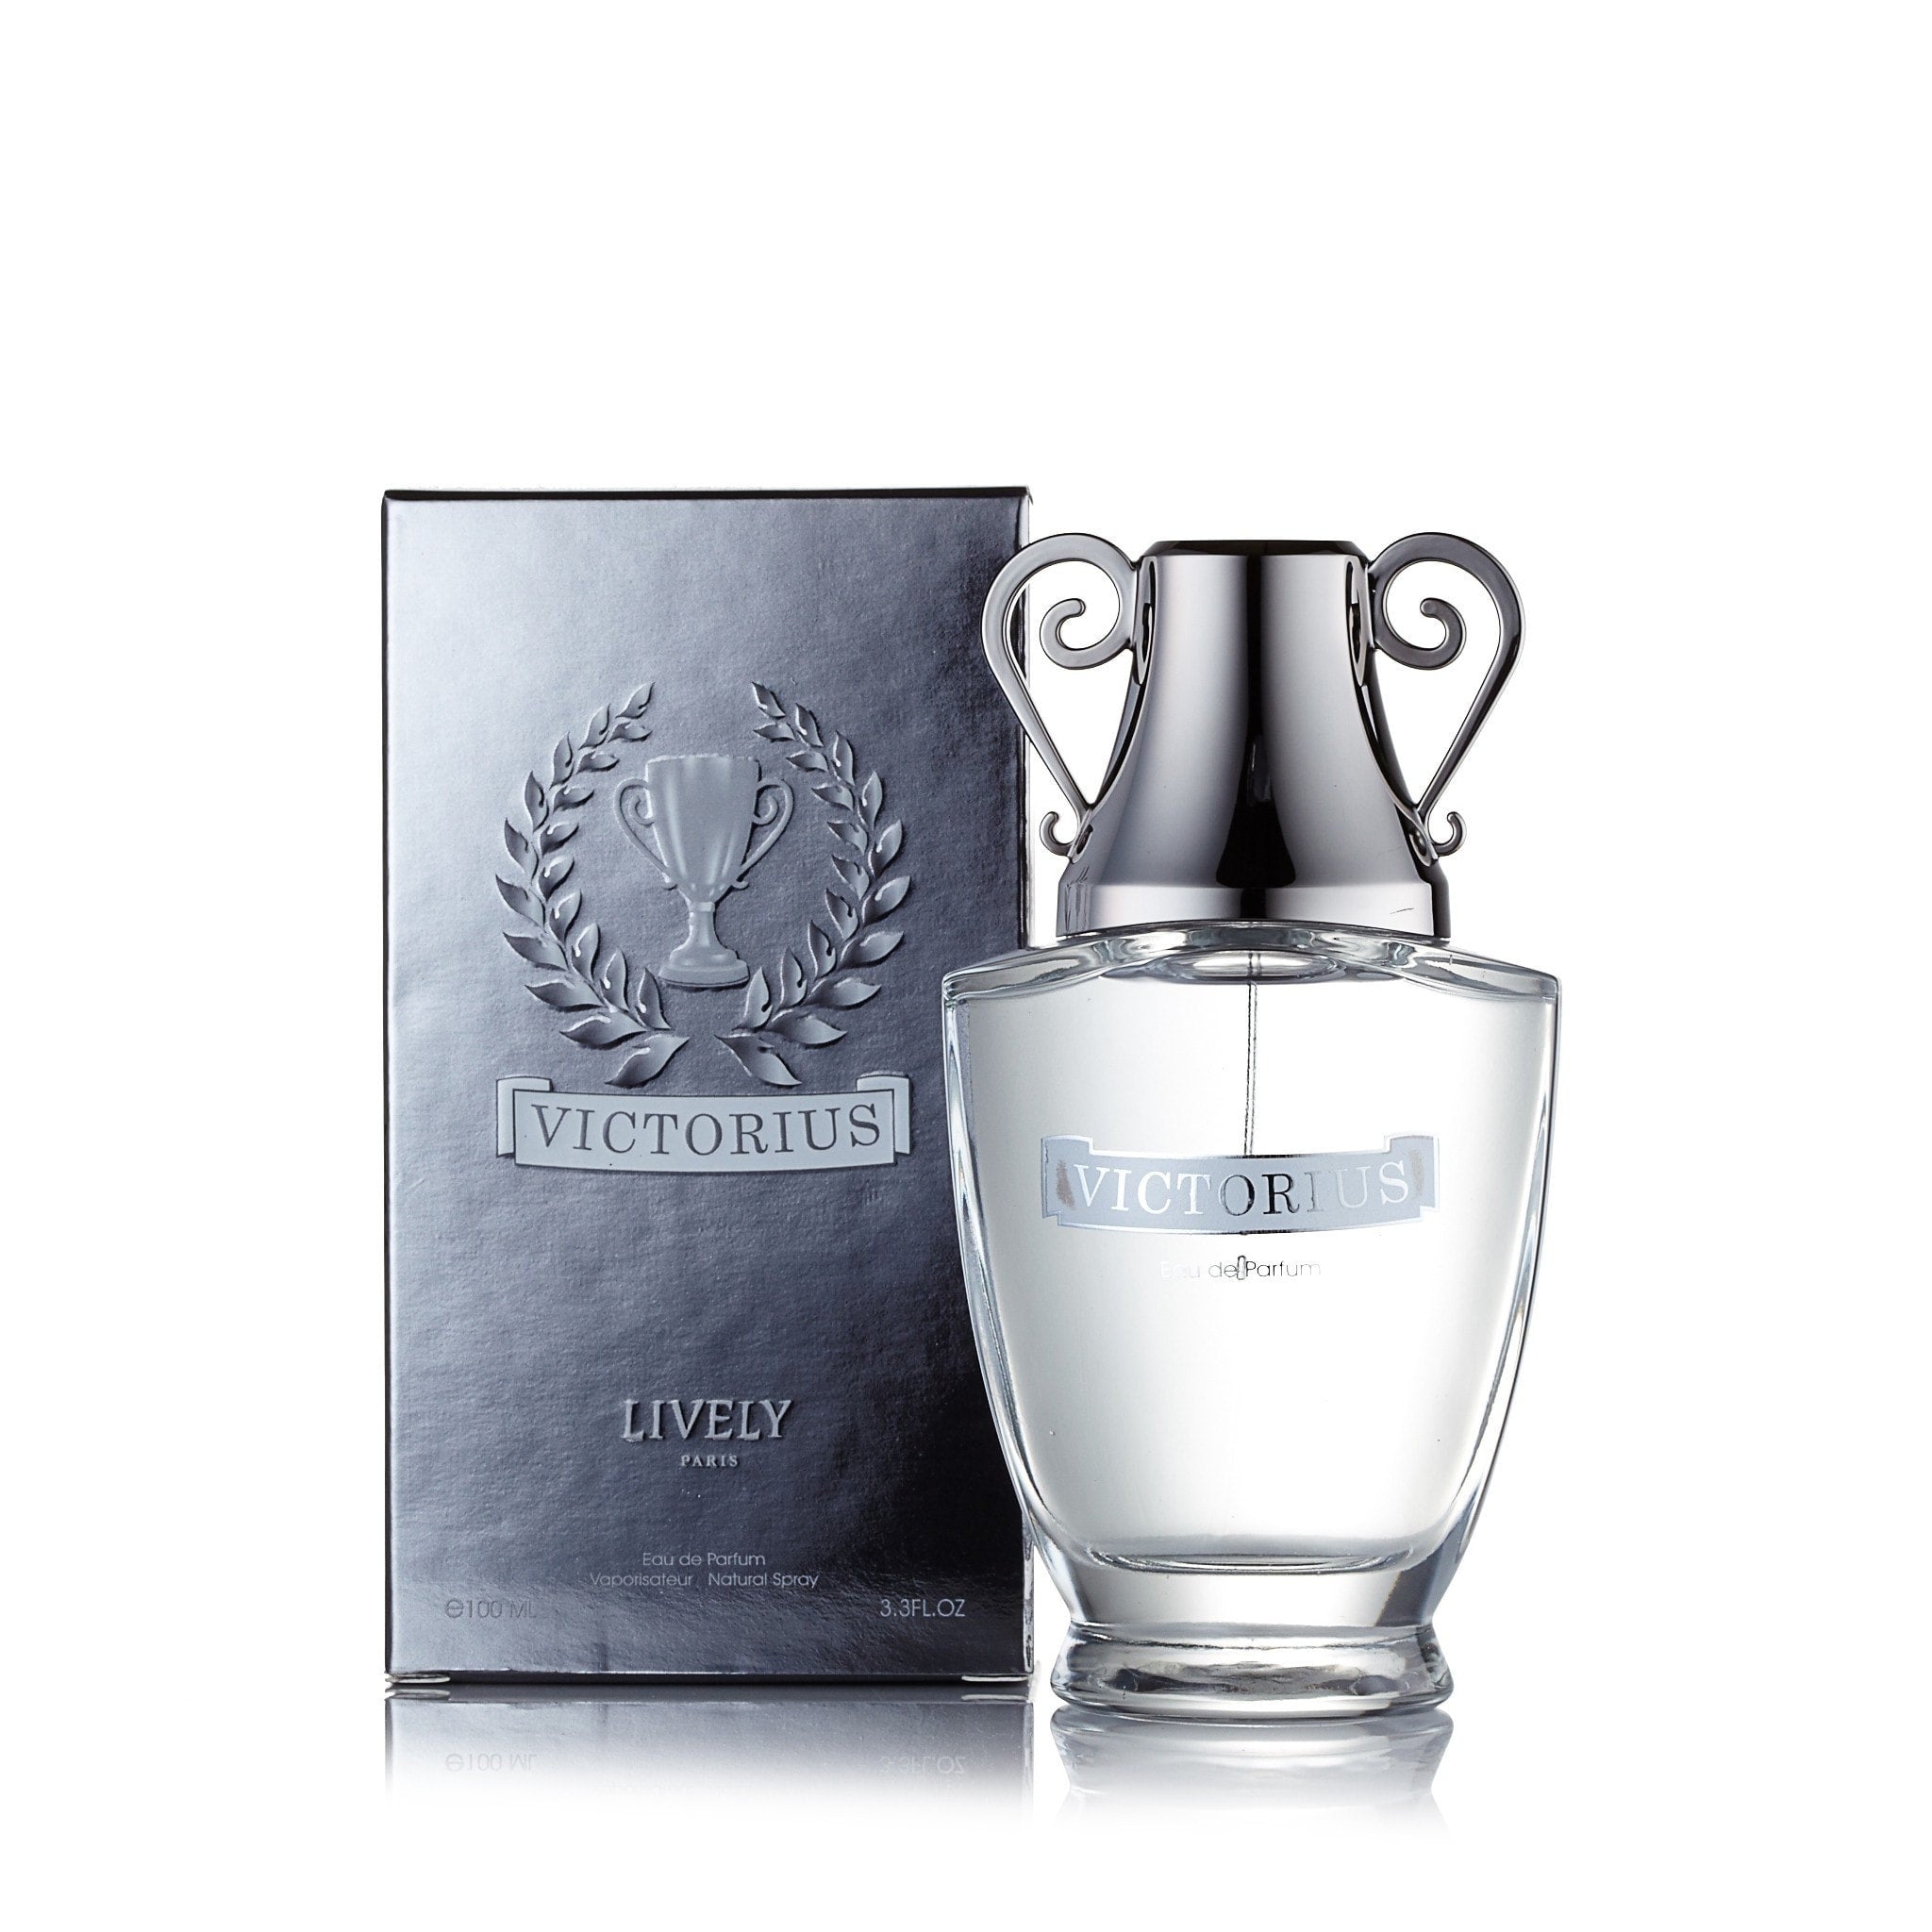 Victorius Eau de Parfum Spray for Men by Lively Paris – Fragrance